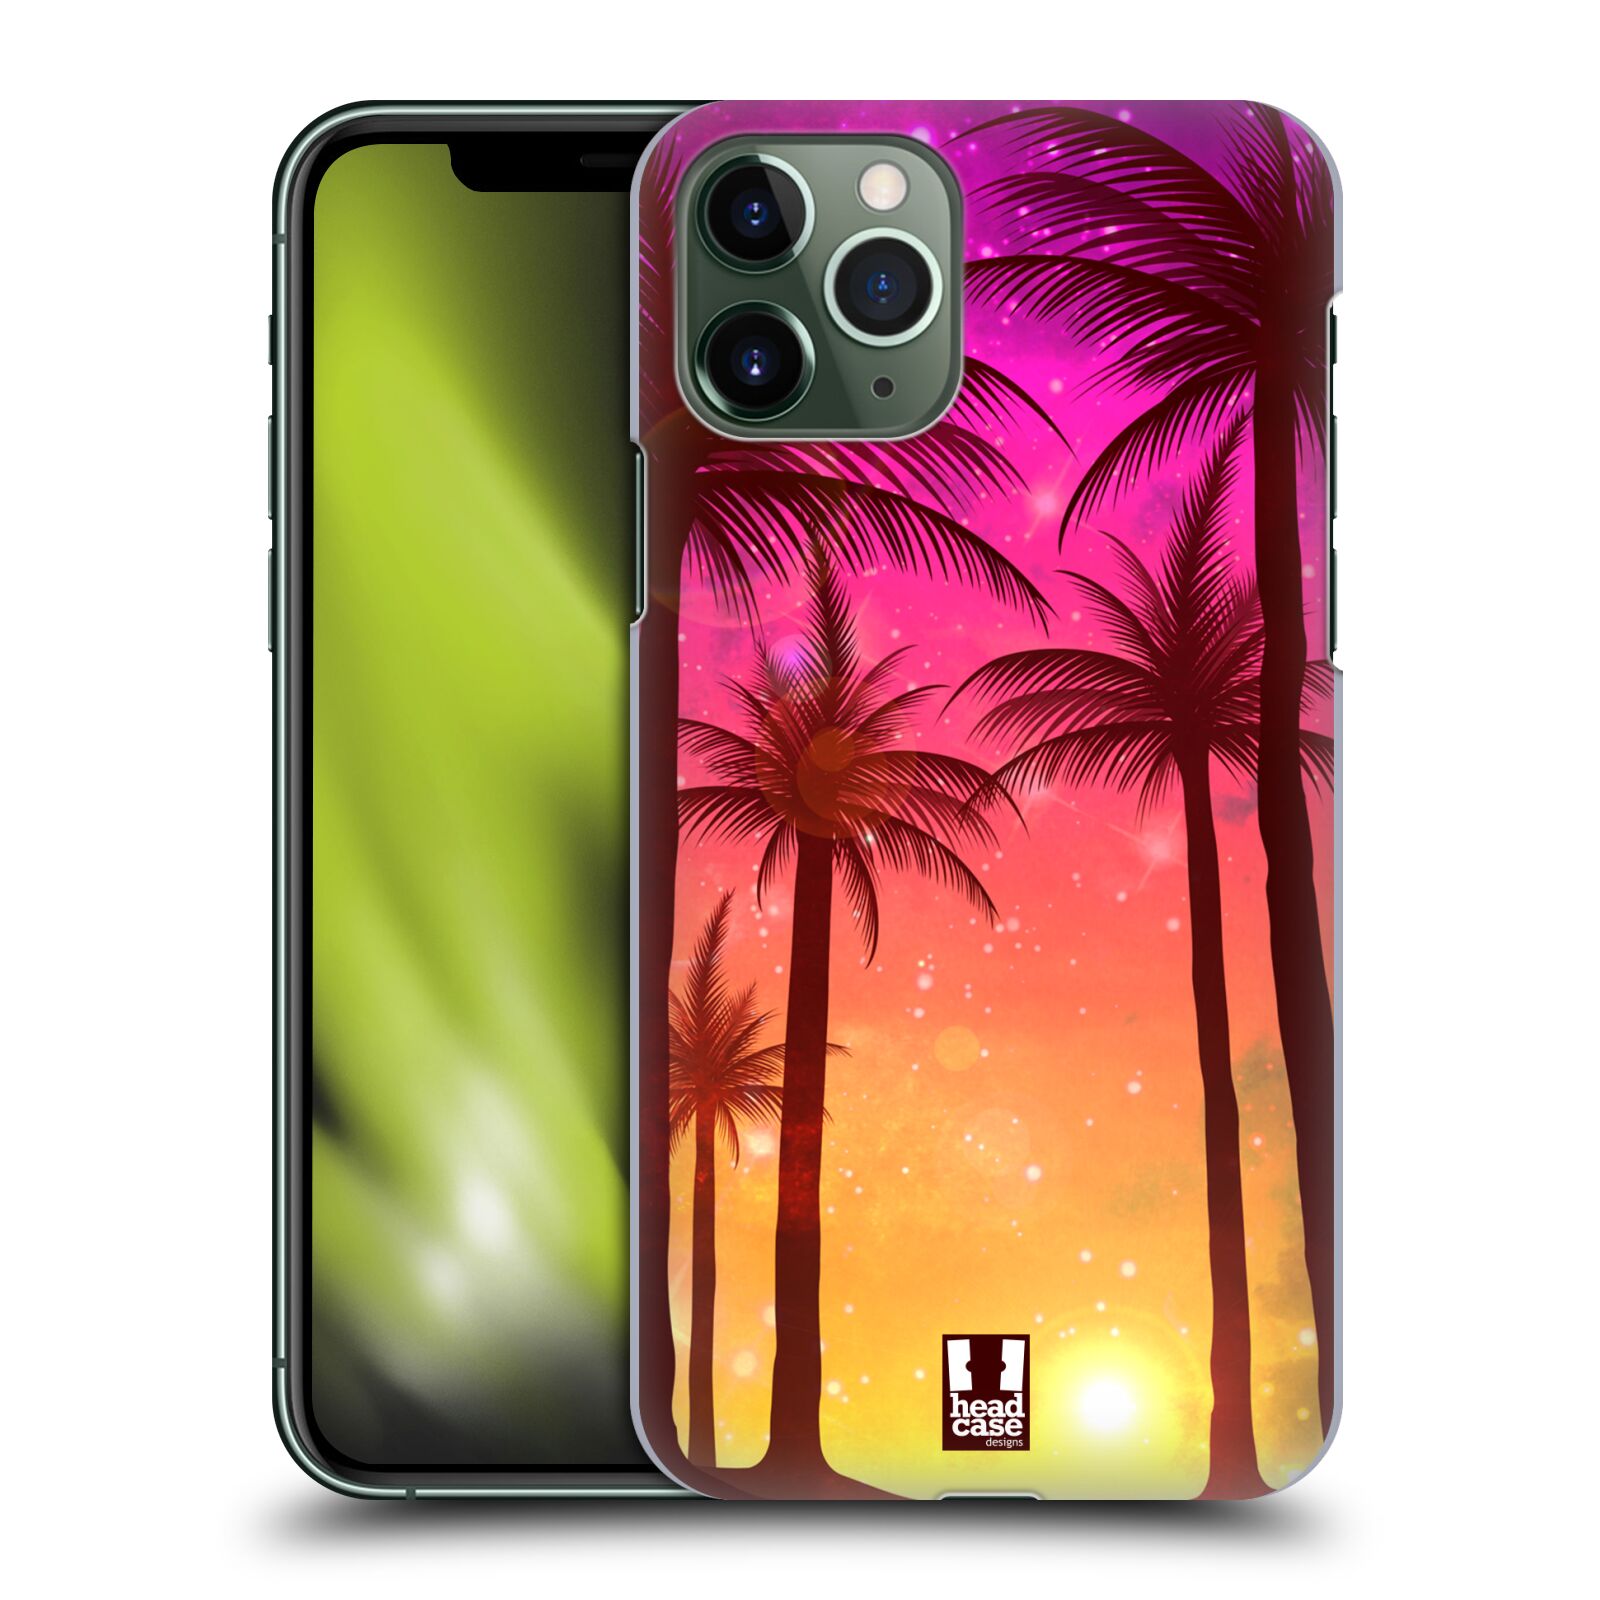 Pouzdro na mobil Apple Iphone 11 PRO - HEAD CASE - vzor Kreslený motiv silueta moře a palmy RŮŽOVÁ